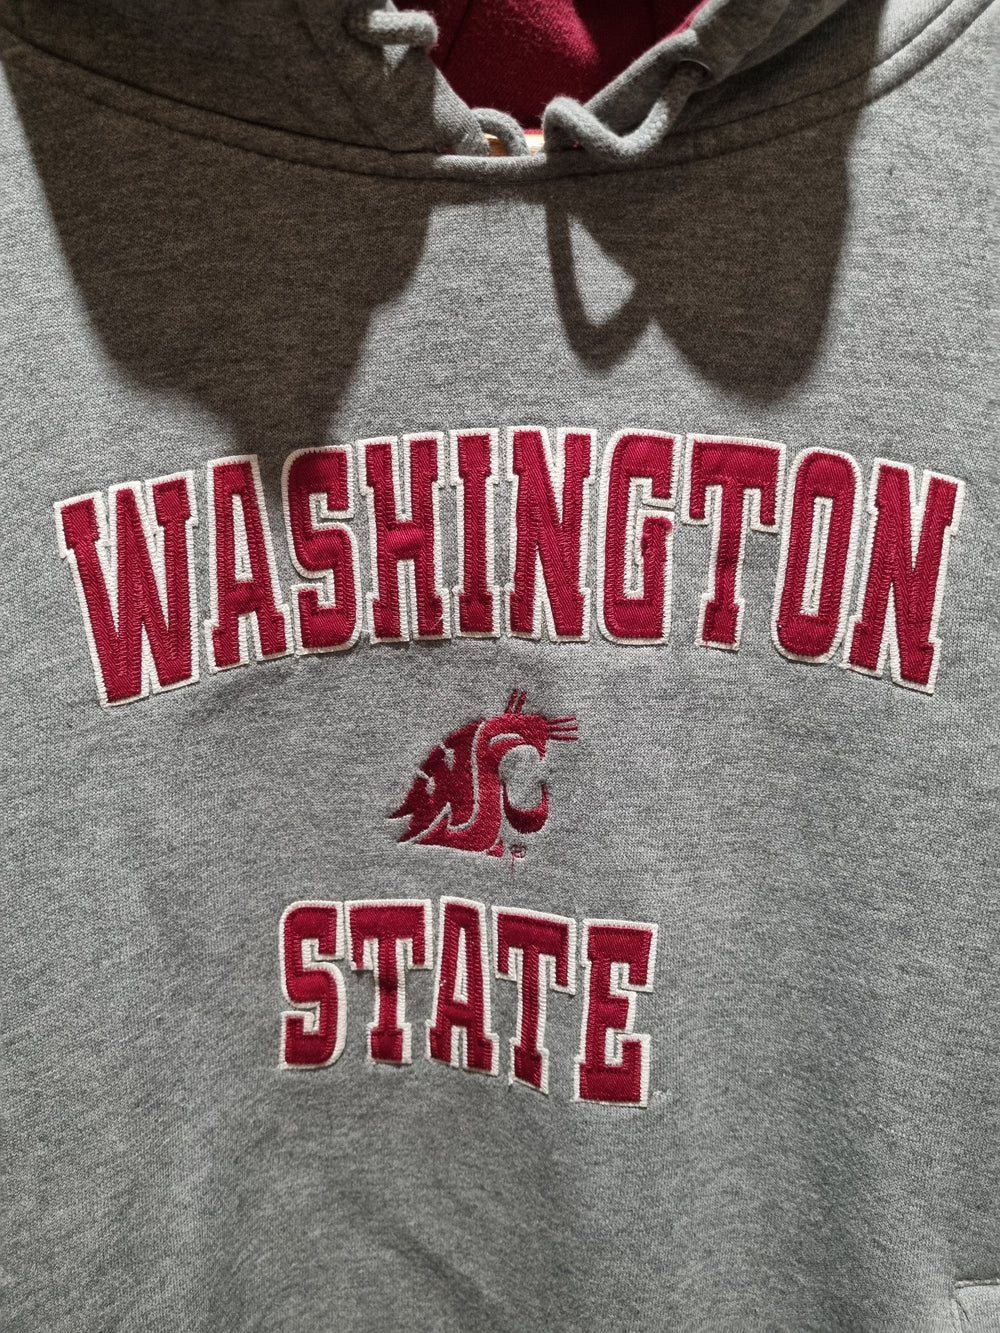 Washington State Cougars Hoodie XL